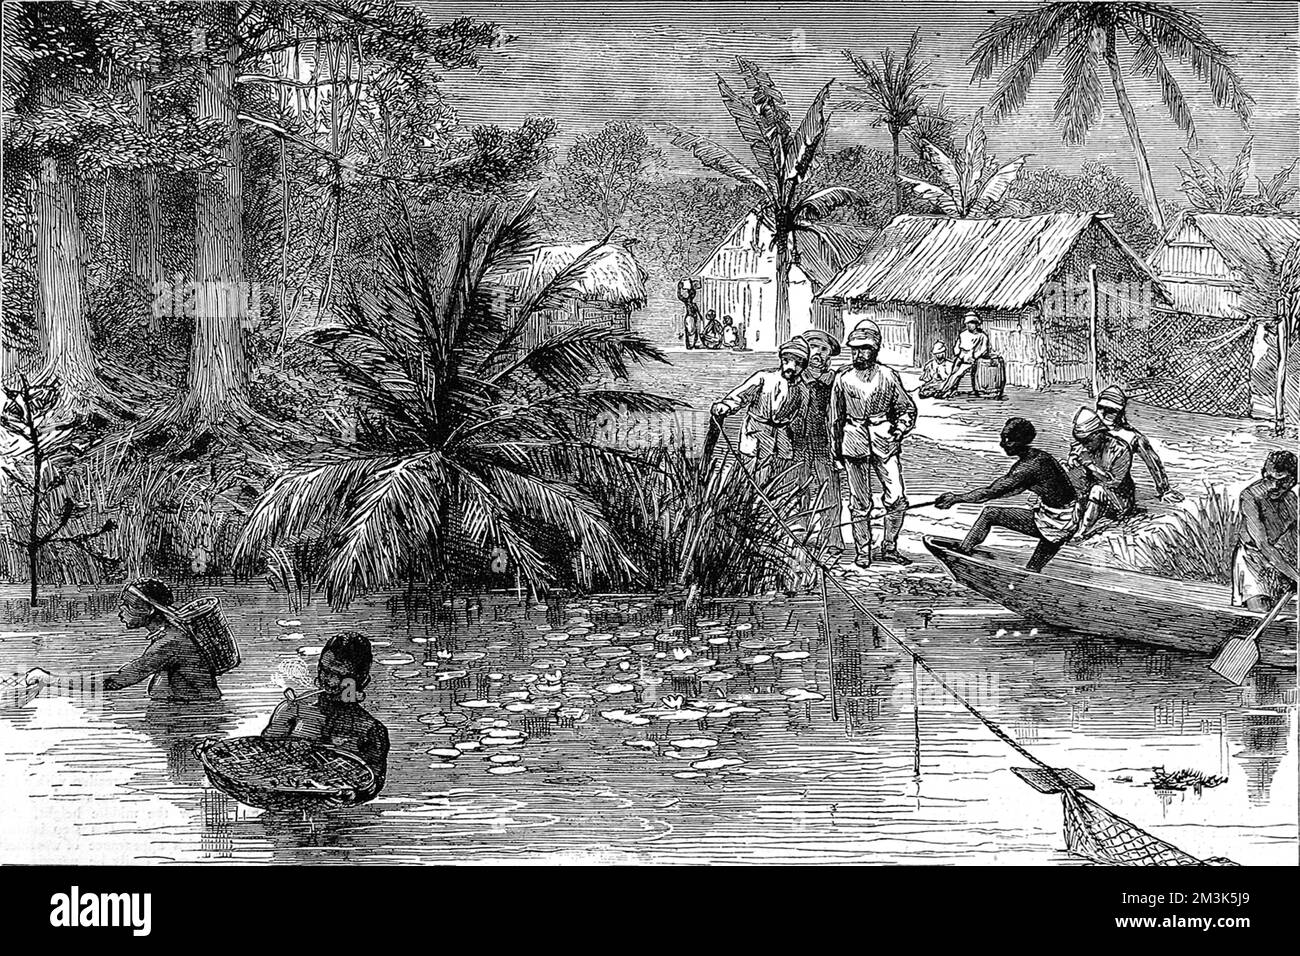 Auf ihrem marsch in Richtung Ashanti-Hauptstadt von Kumasi beobachten britische Soldaten die friedliche Szene von Frauen, die Fische und Tritons im Fluss Prah fangen. Die Briten überquerten diesen Fluss in ihrem Kampf gegen den König von Ashanti. 1873, nach Jahrzehnten einer unruhigen Beziehung zwischen den Briten und dem Volk der Acing in Zentral-Ghana, griffen die Briten die Hauptstadt von Kumasi in Asanti an und zerstörten sie praktisch. Am 24. Juli 1874 erklärten sie Ghana offiziell zur Kronkolonie. 7. März 1874 Stockfoto